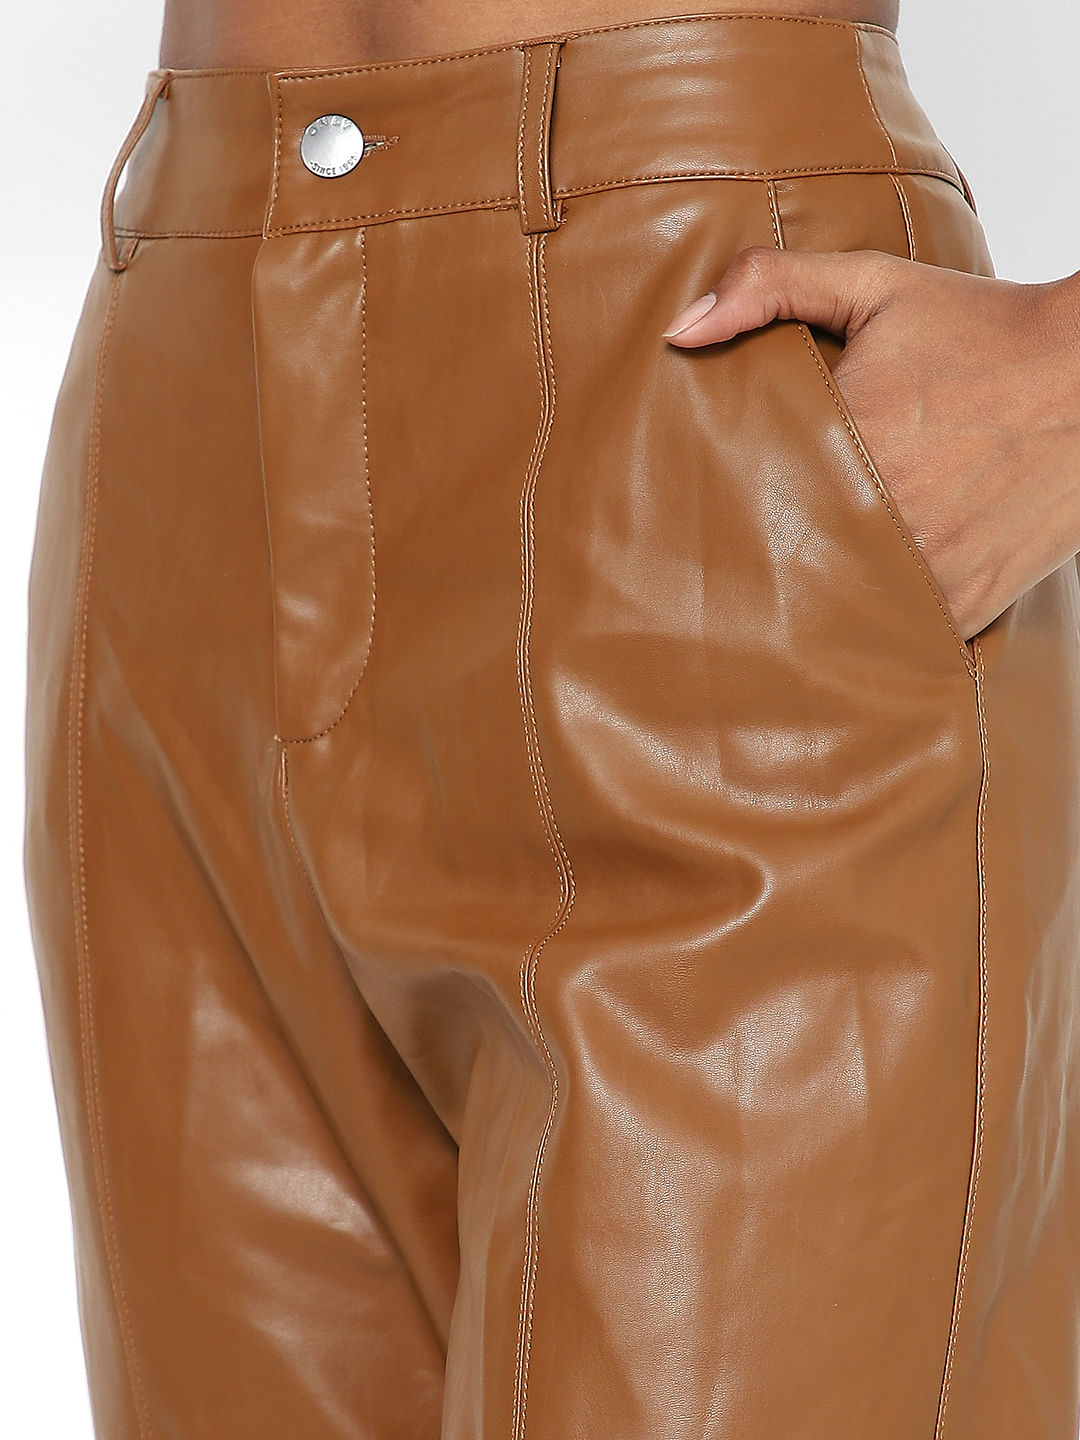 Cognac Faux Leather Pants - High Waisted Pants - Pleather Pants - Lulus